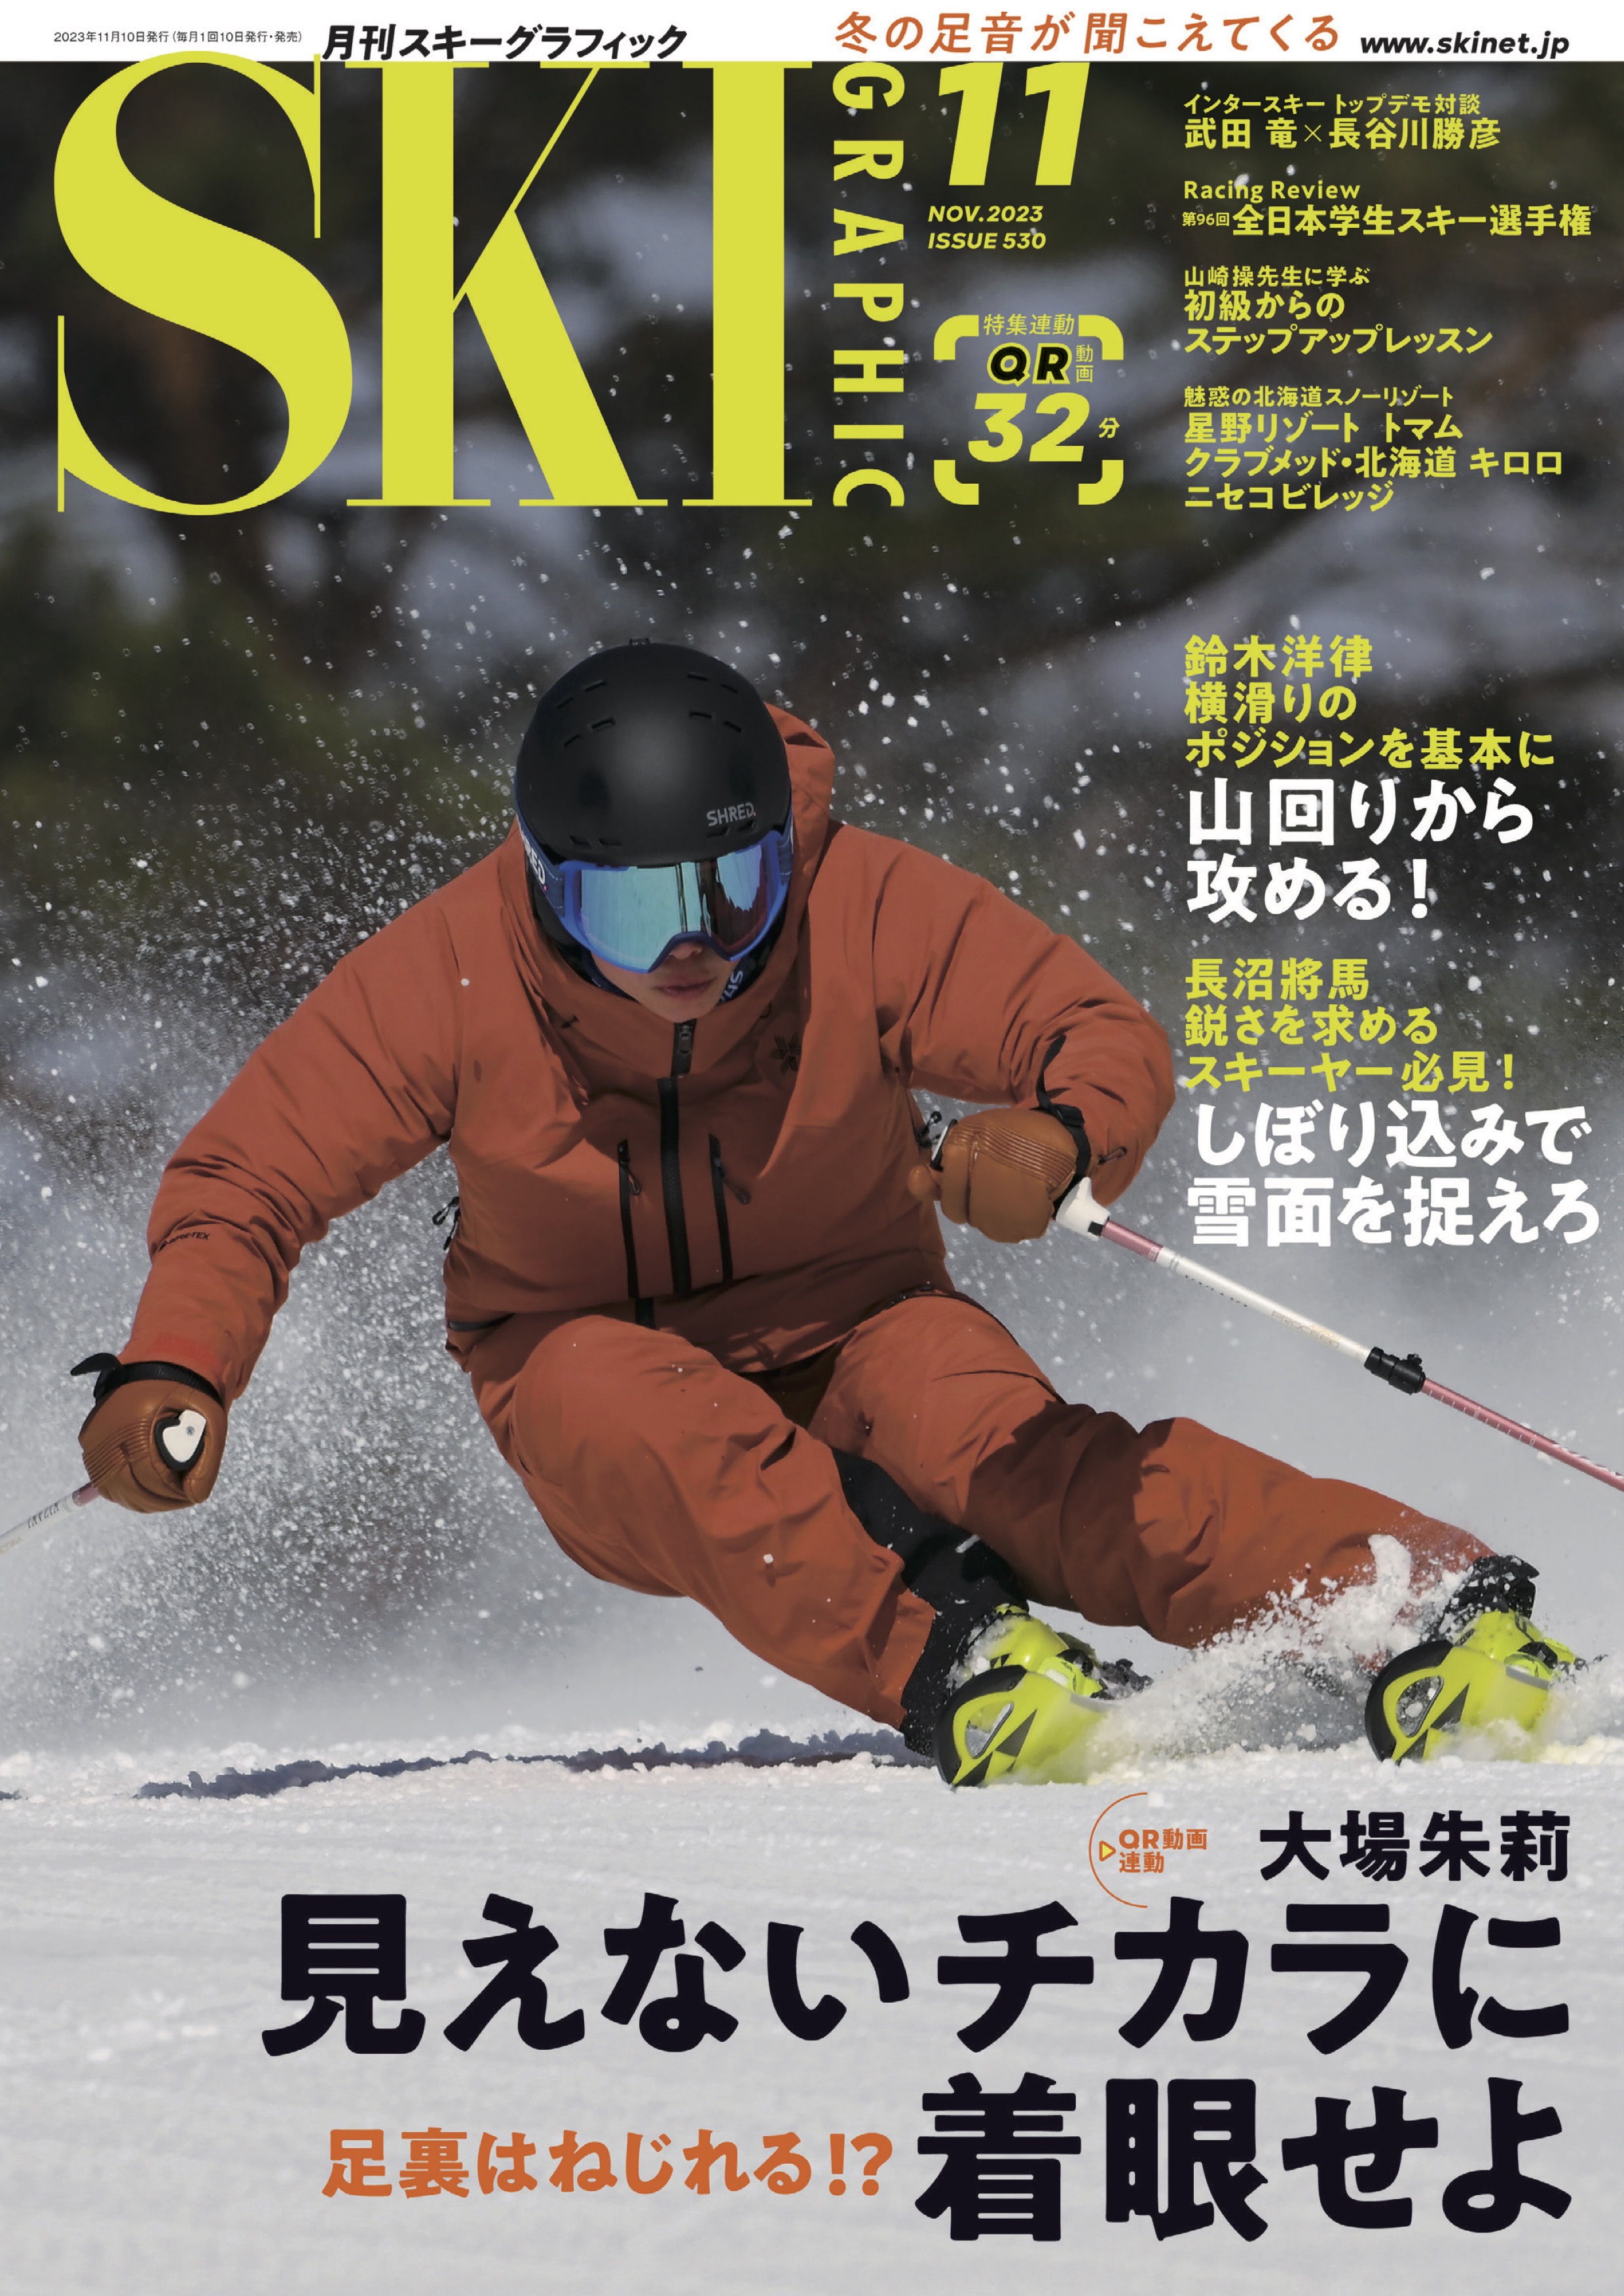 スキーグラフィックNo.530 - スキーグラフィック編集部 - 漫画・ラノベ